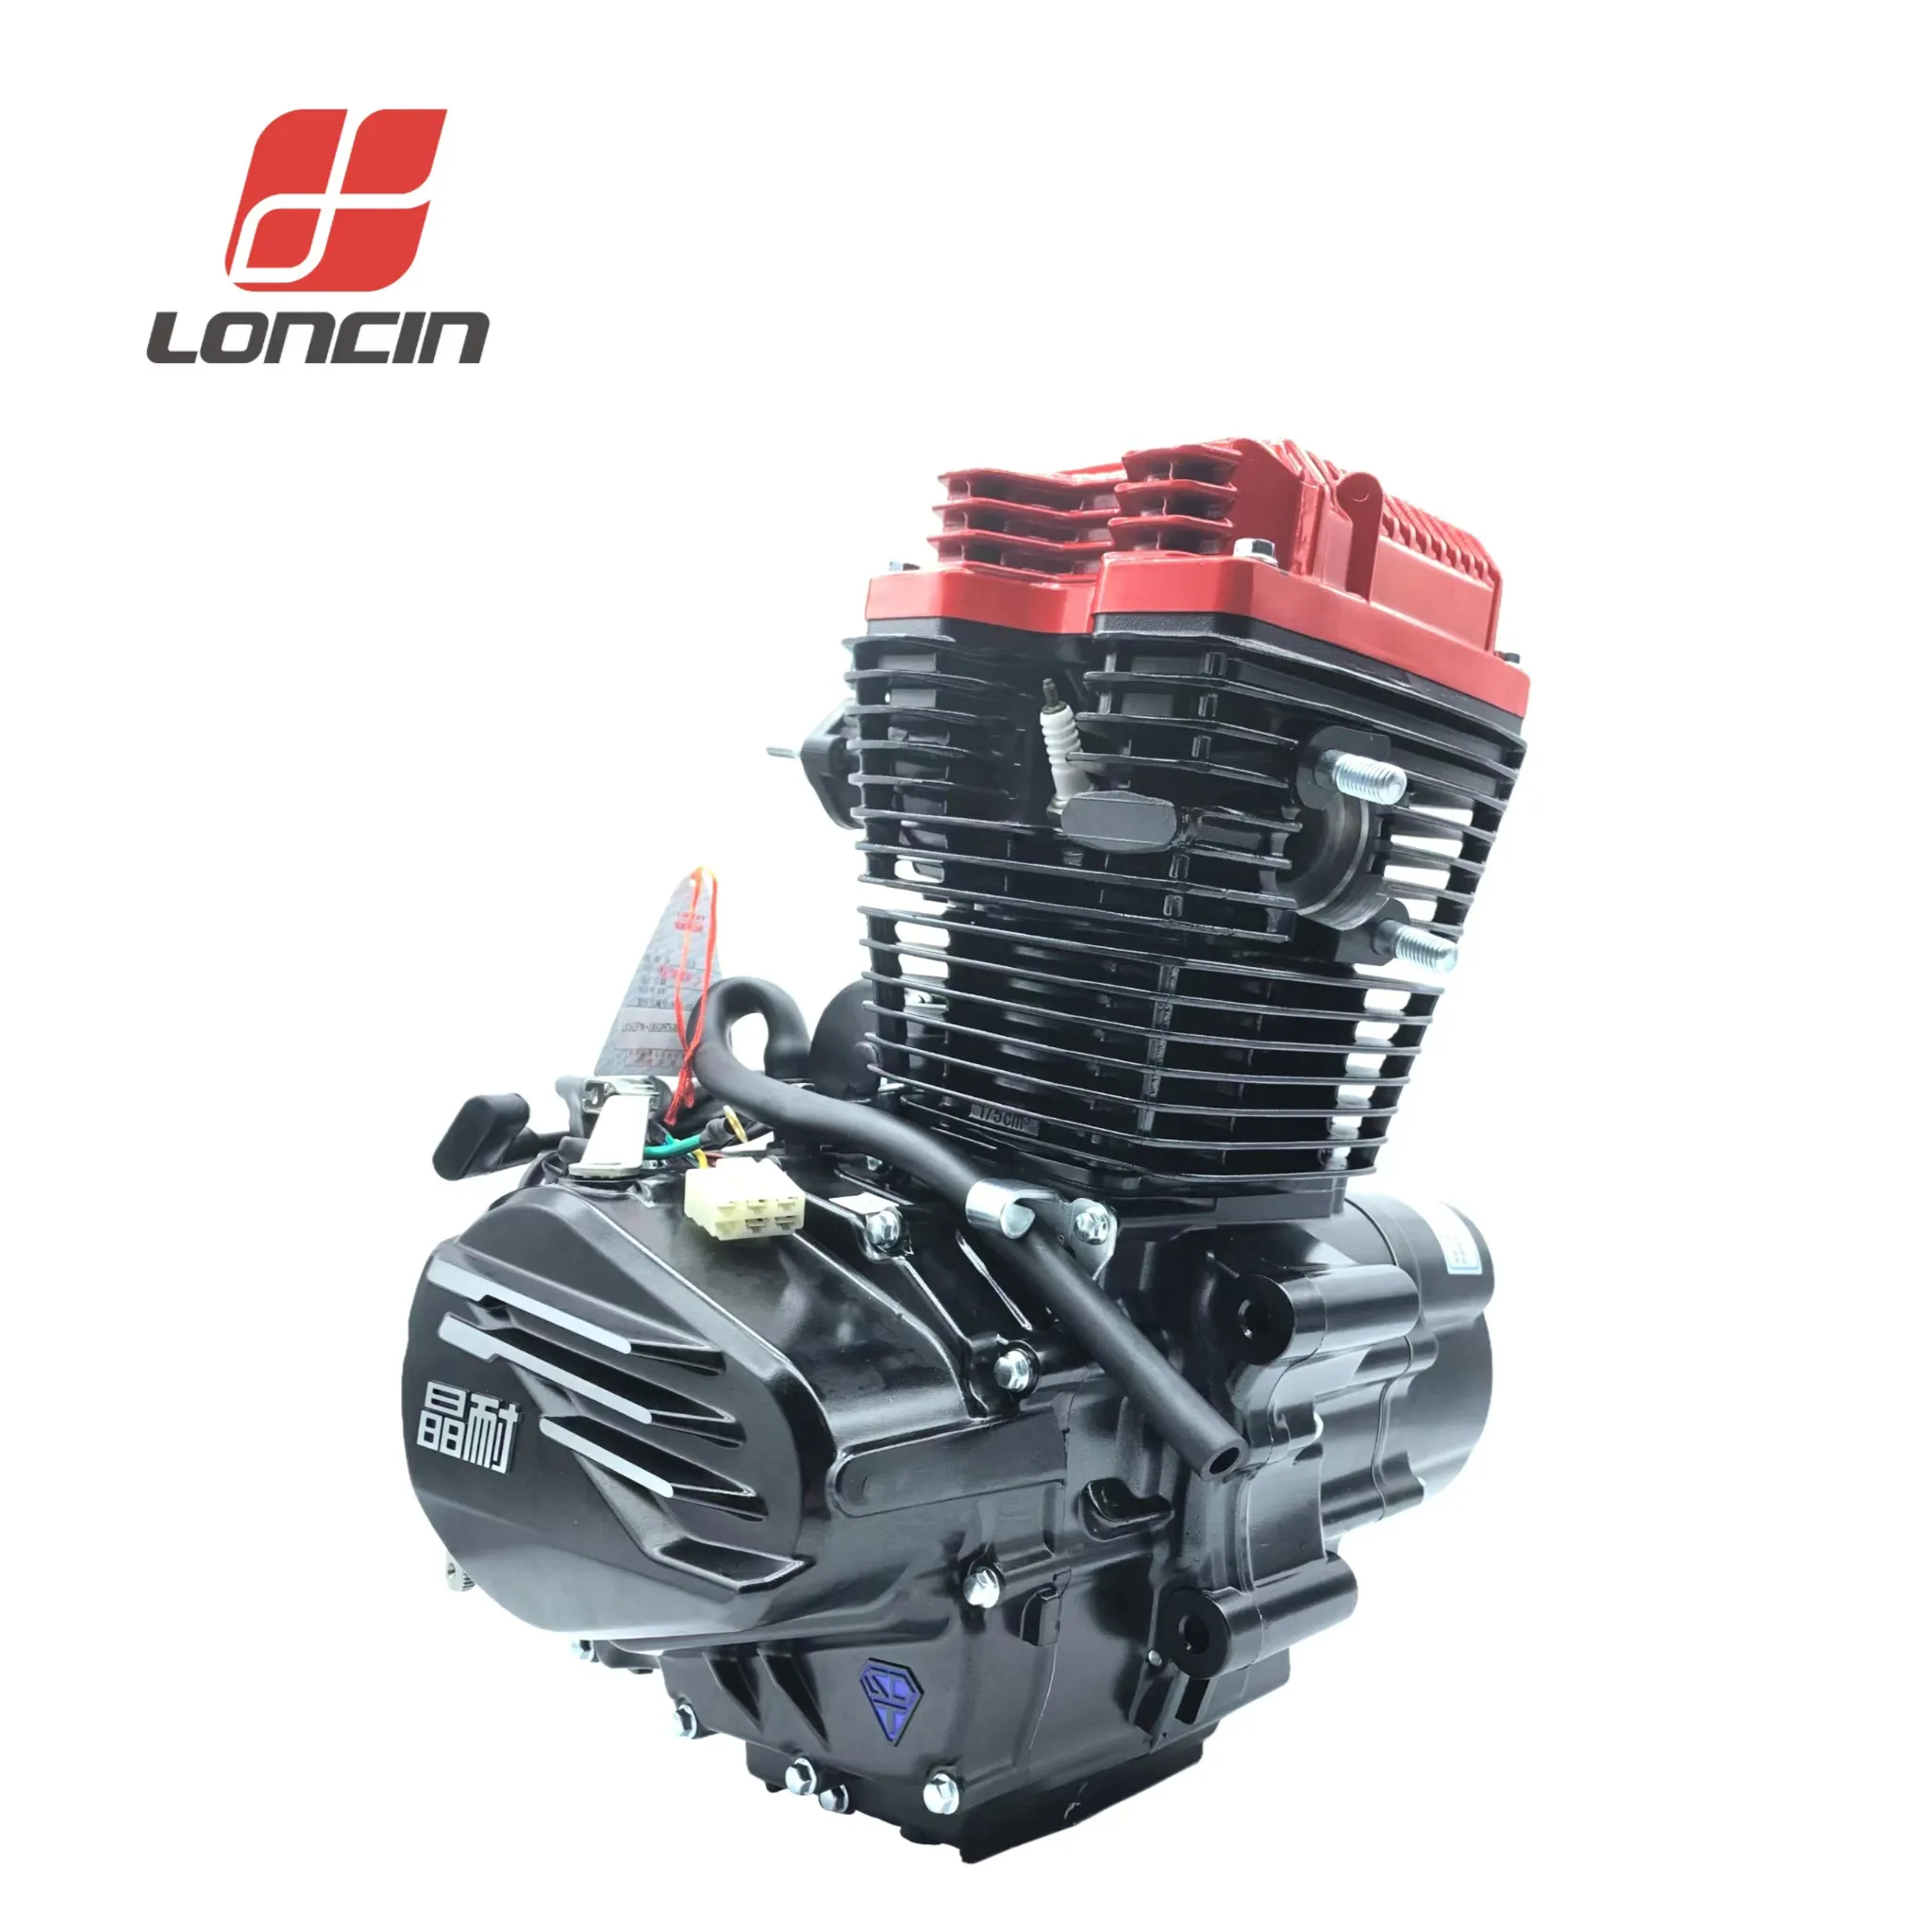 มอเตอร์ทนคริสตัล175cc,เครื่องยนต์มอเตอร์สำหรับฮอนด้าสำหรับ BMW รูปทรงกระบอกเดียวเครื่องยนต์ Loncin 175cc แบบกำหนดค่าได้สูง